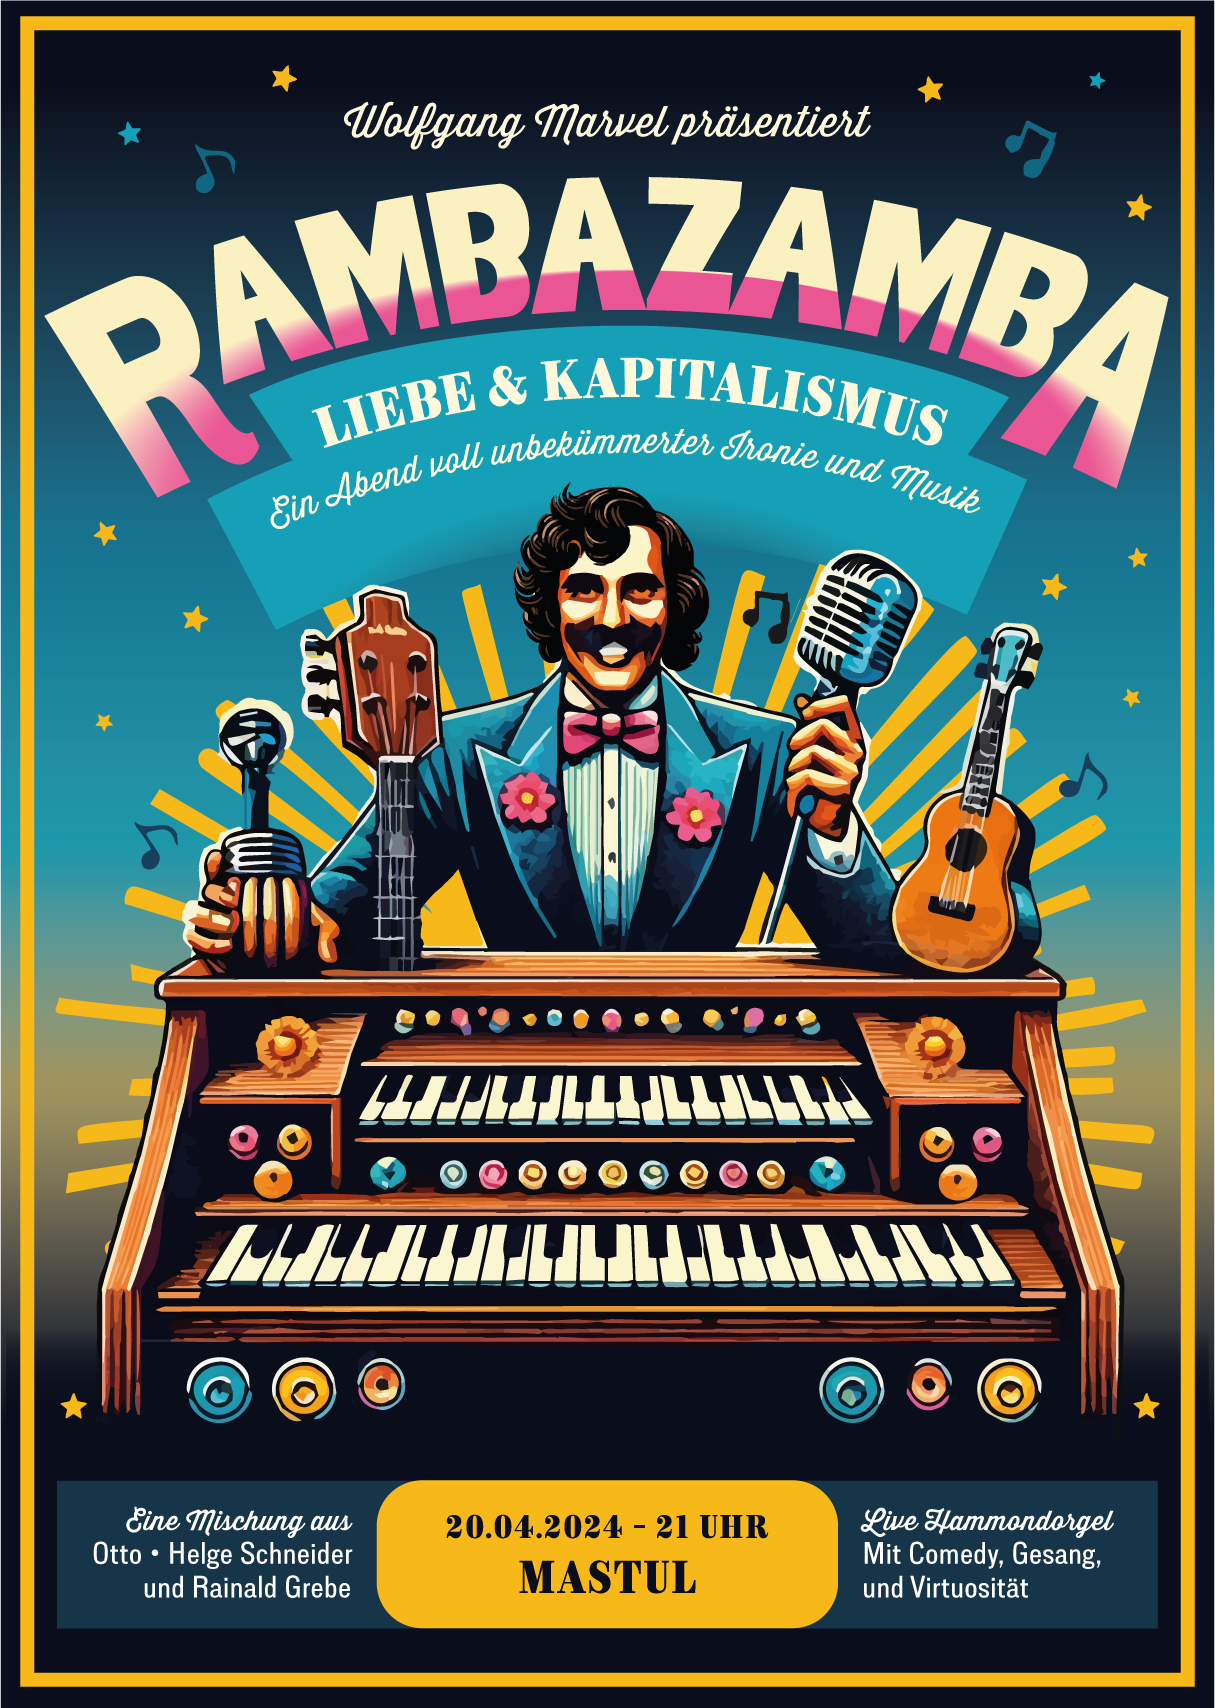 Rambazamba